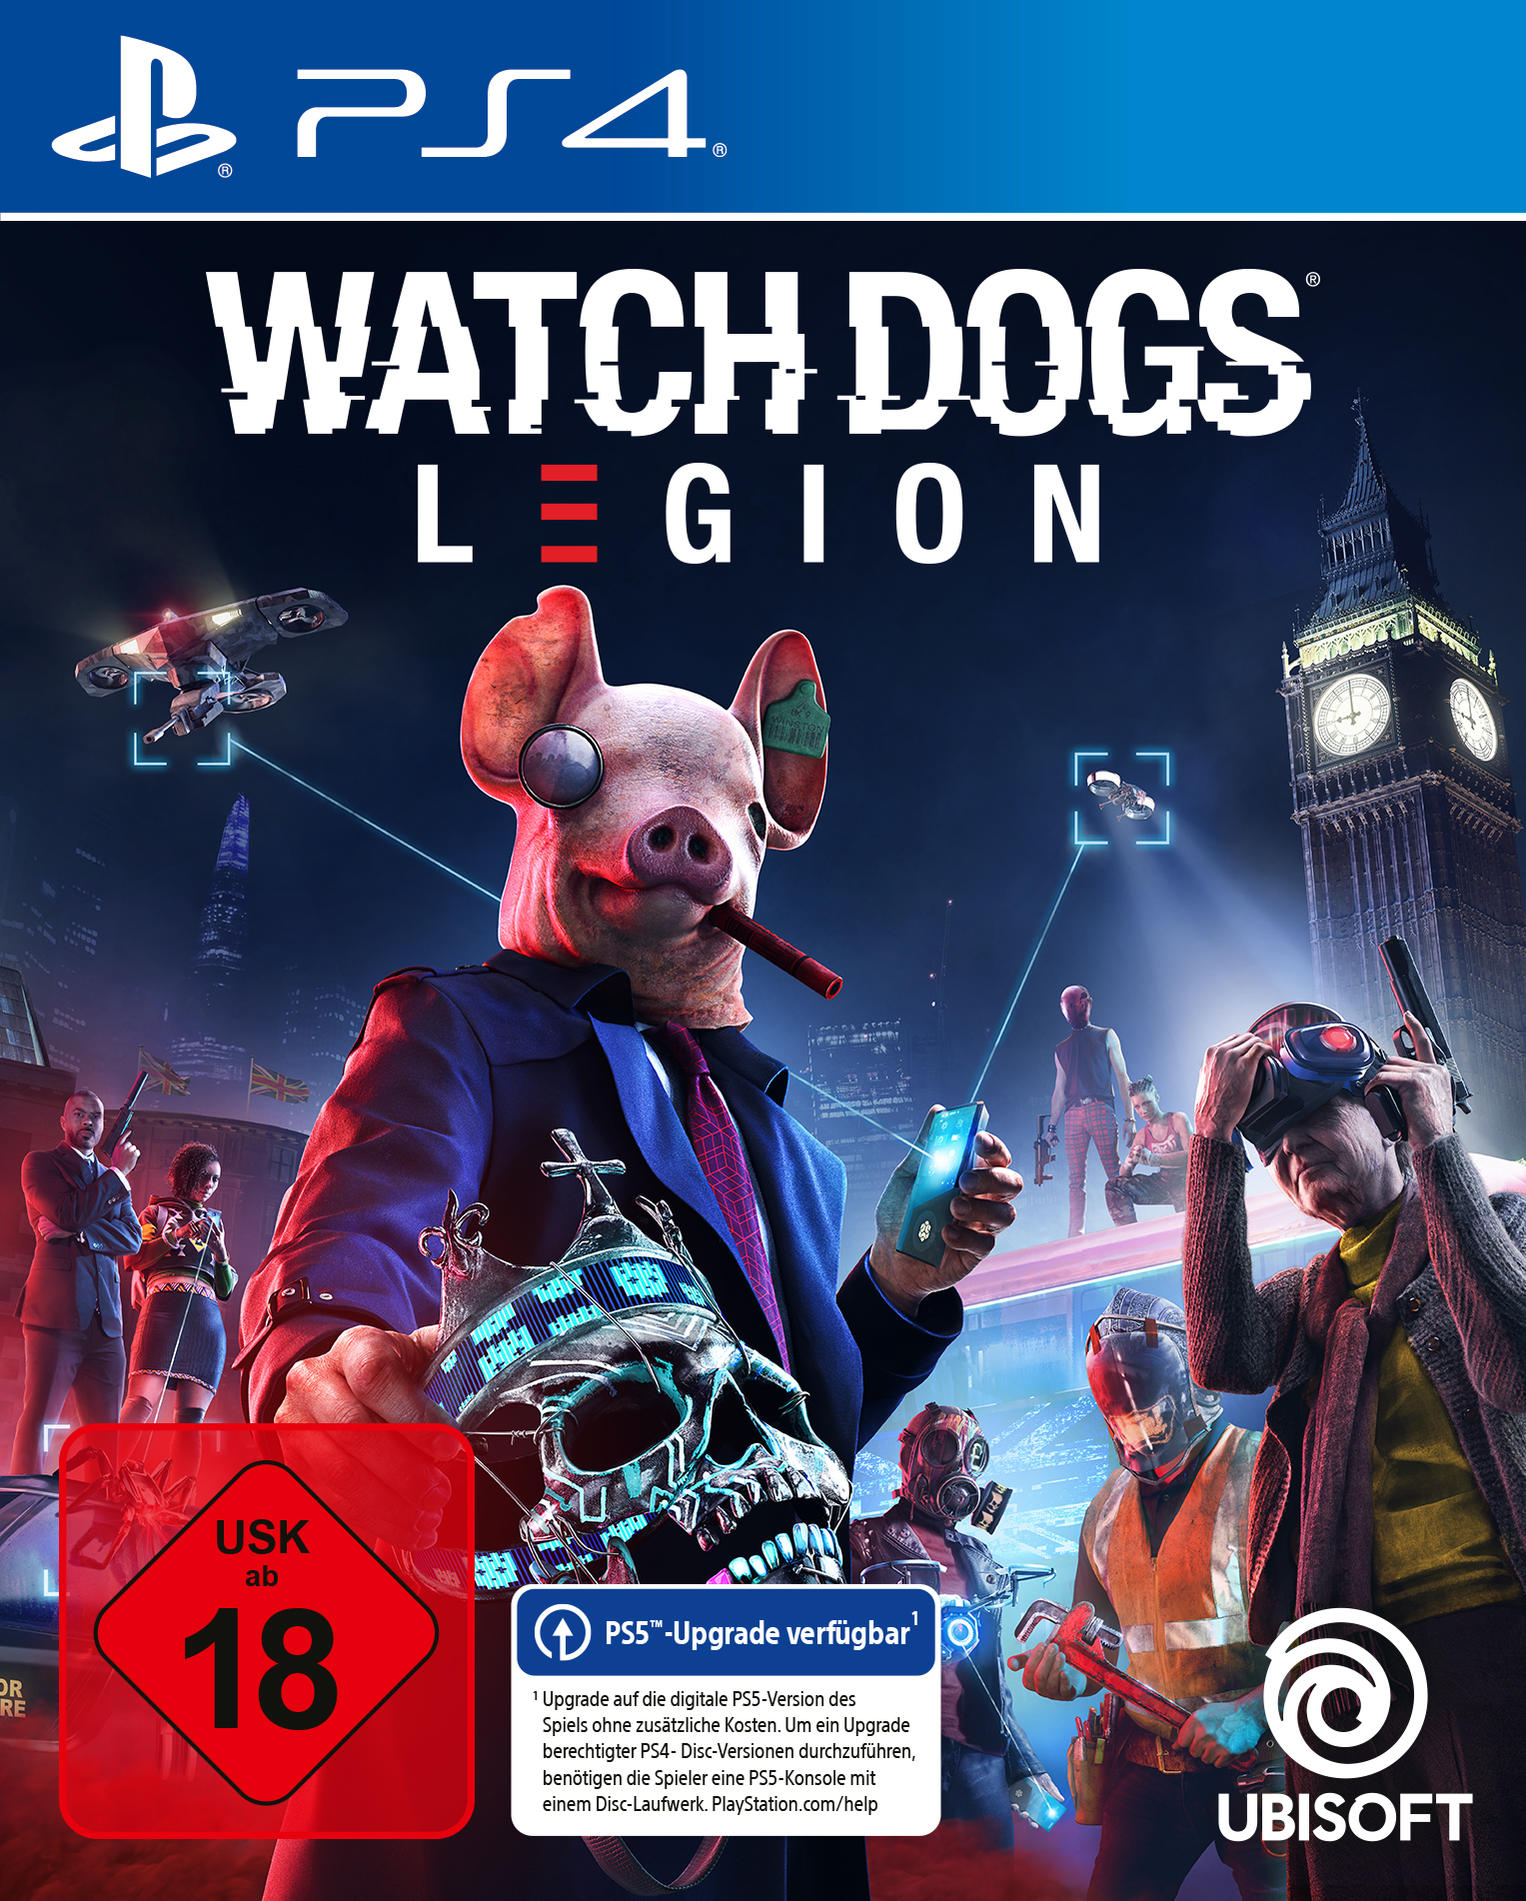 Dogs: Legion - 4] [PlayStation Watch